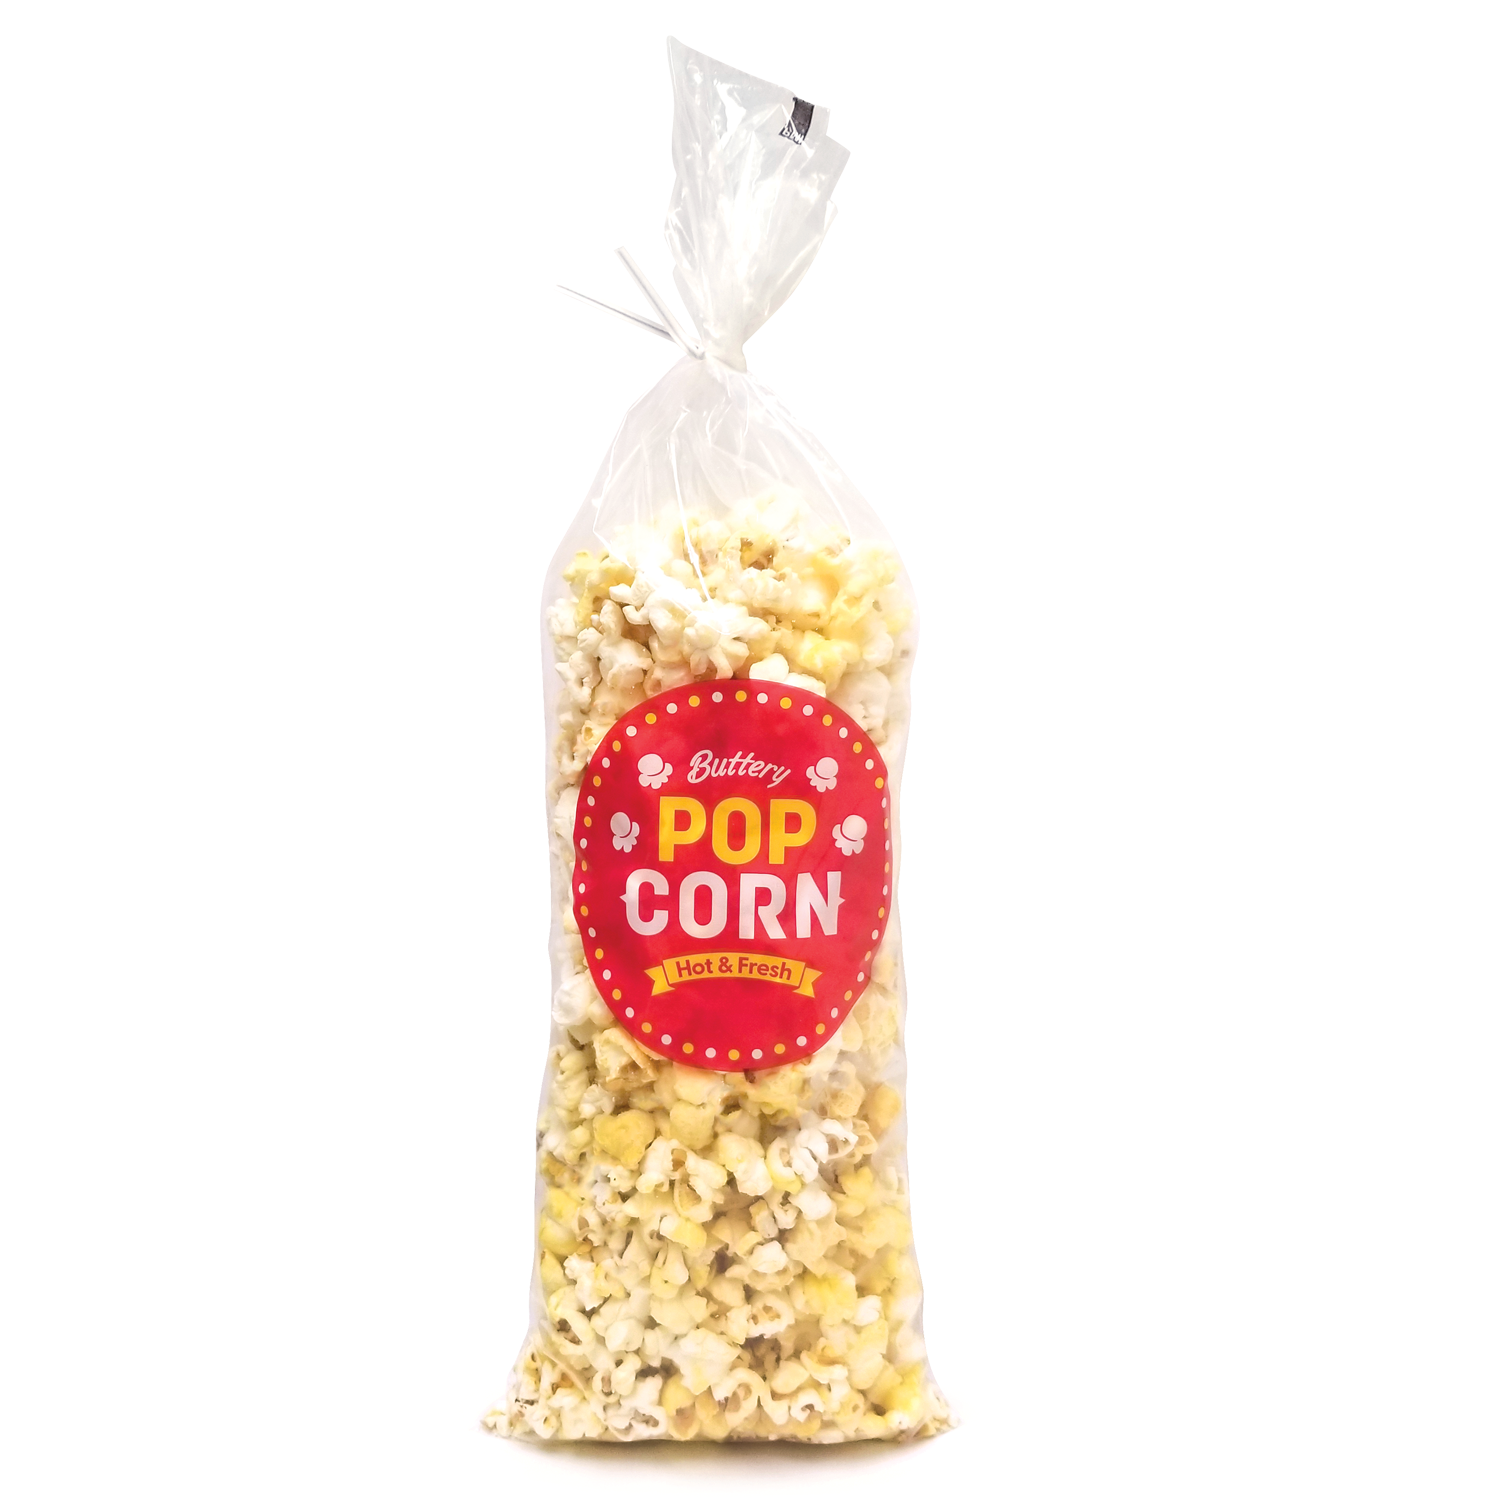 popcorn-bags-16-clear-1000-cs-2020-action-enterprises-popcorn